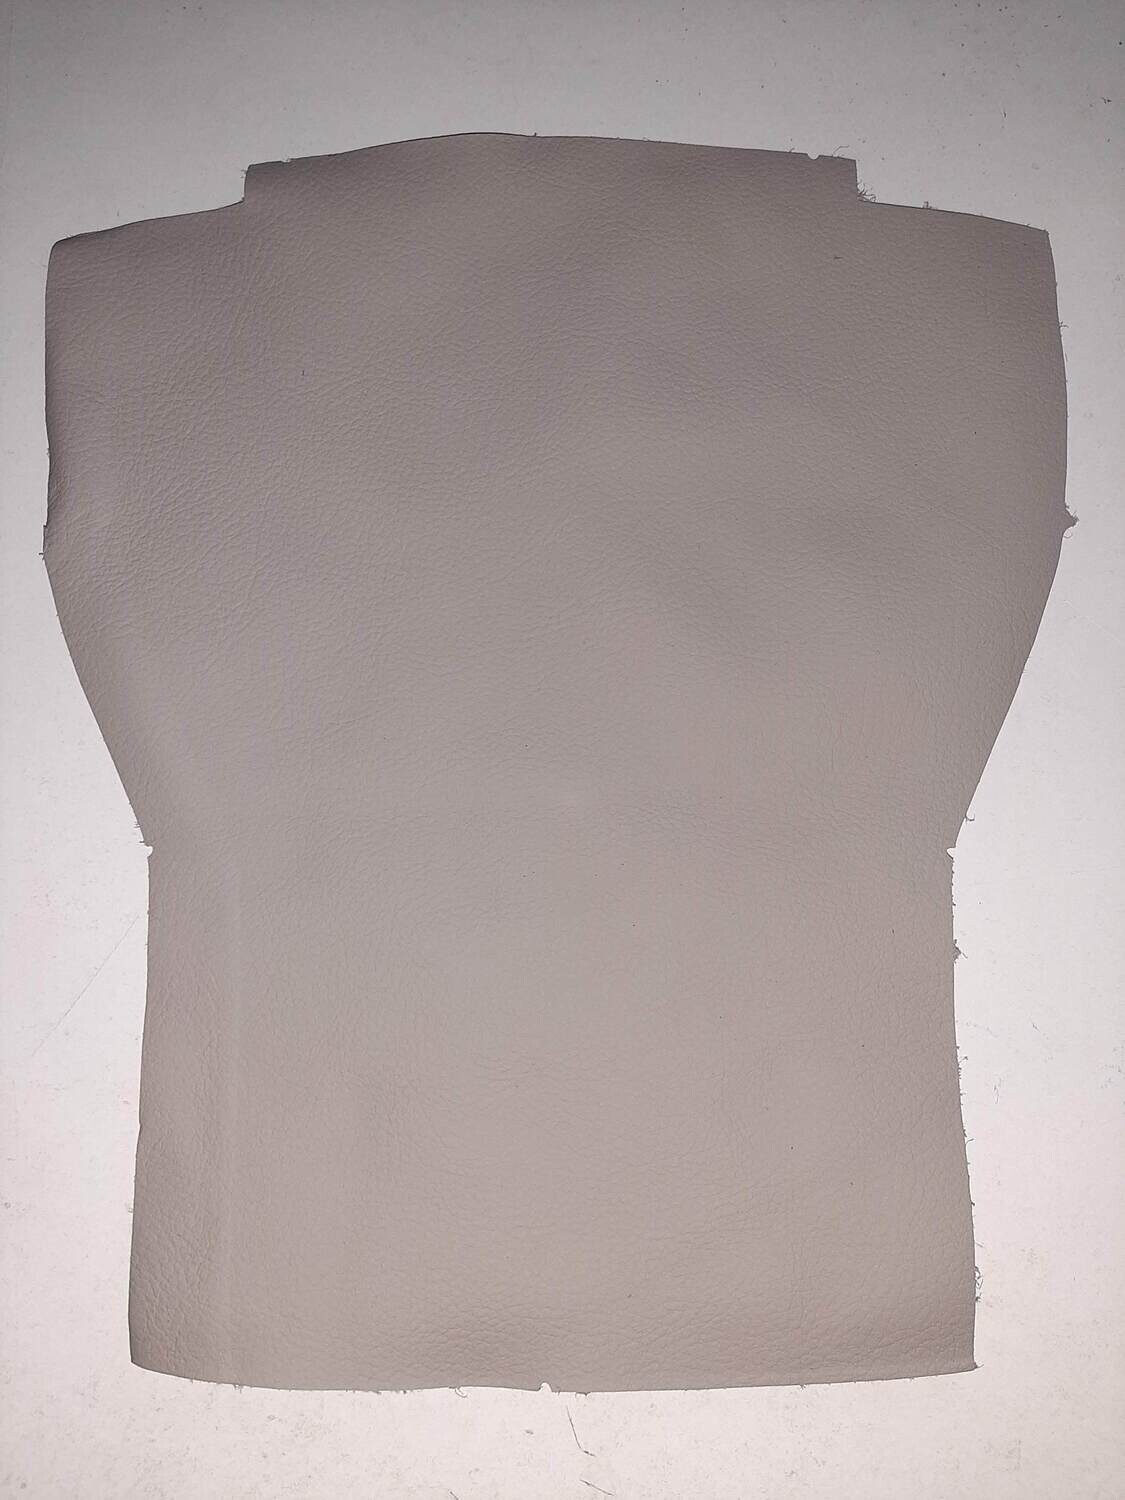 Leather pieces grey color 25 x 16 cm